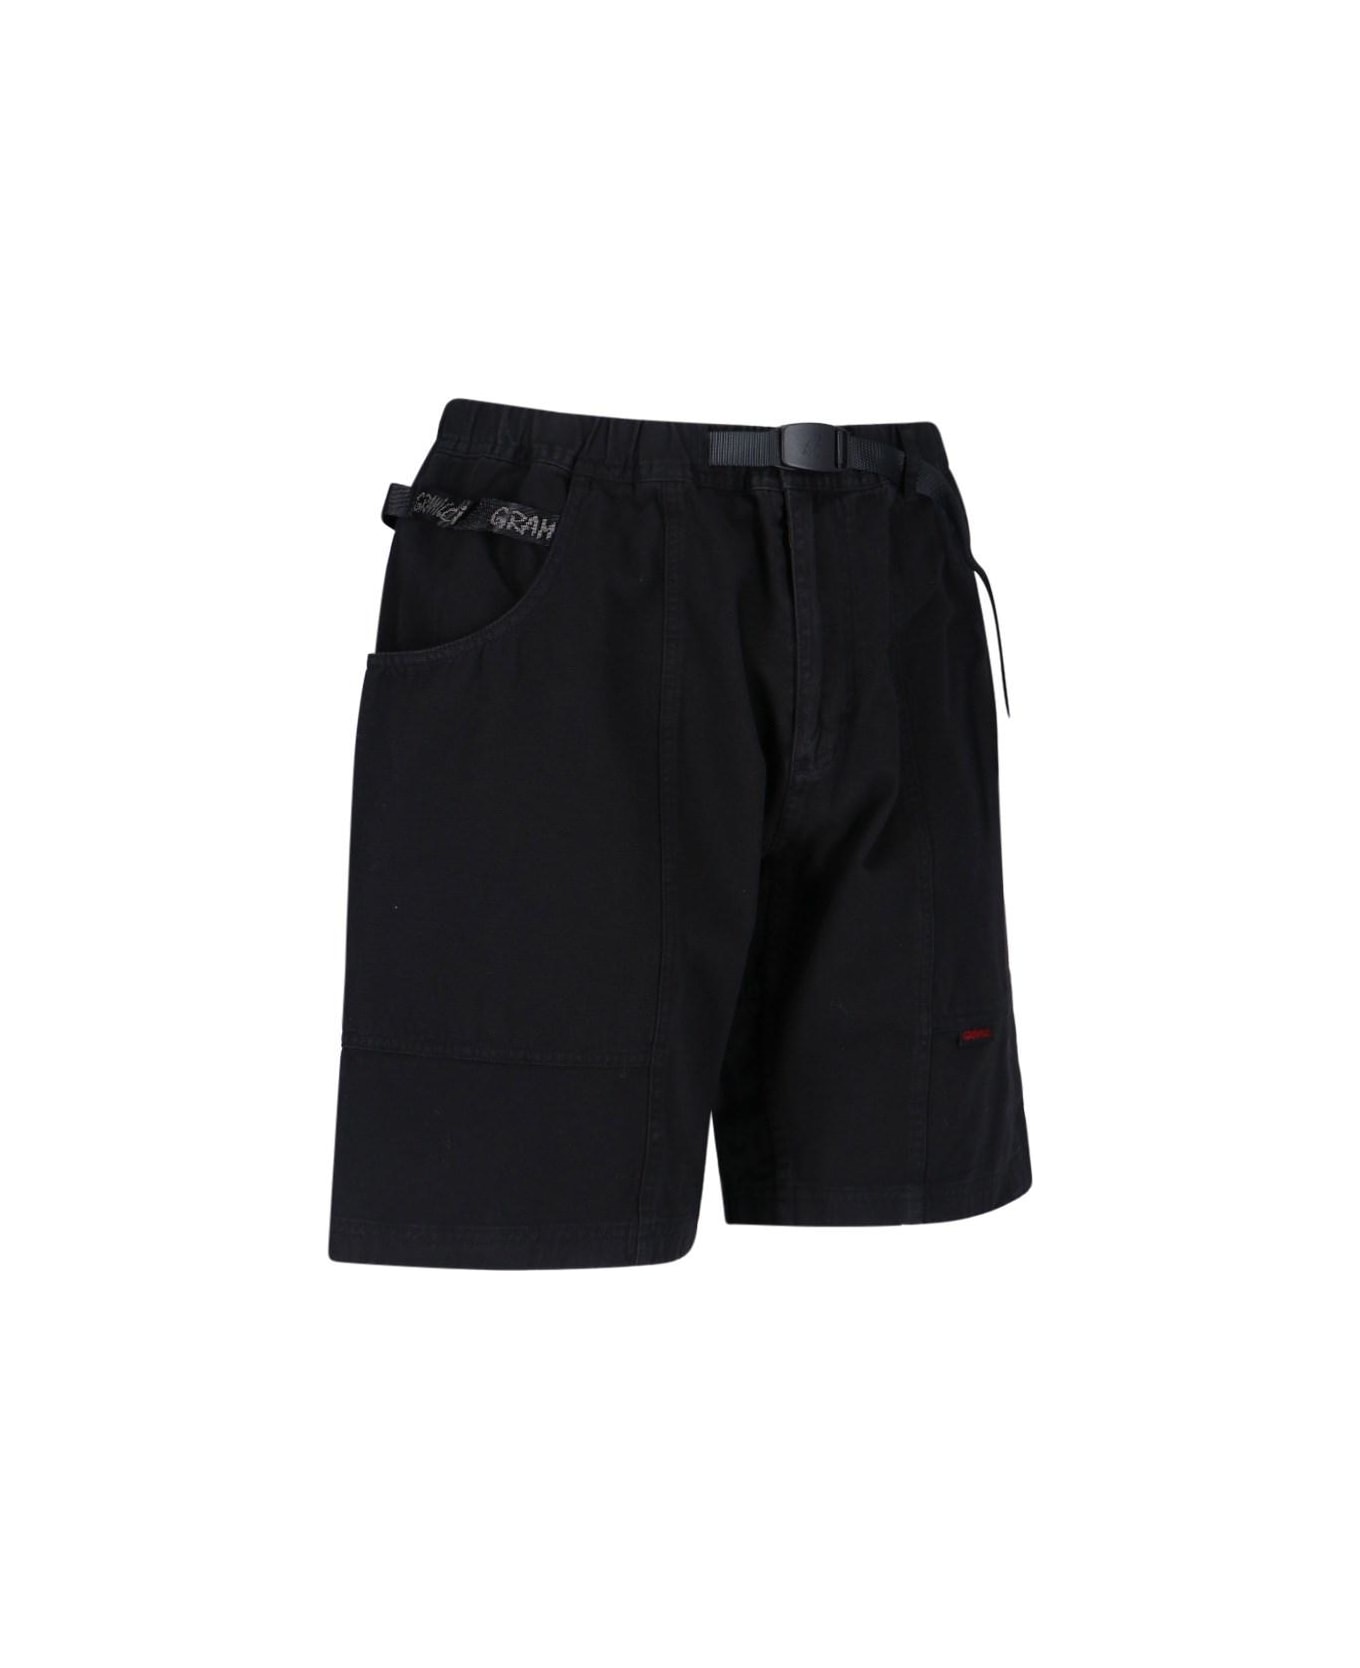 Gramicci 'gadget' Shorts - Black